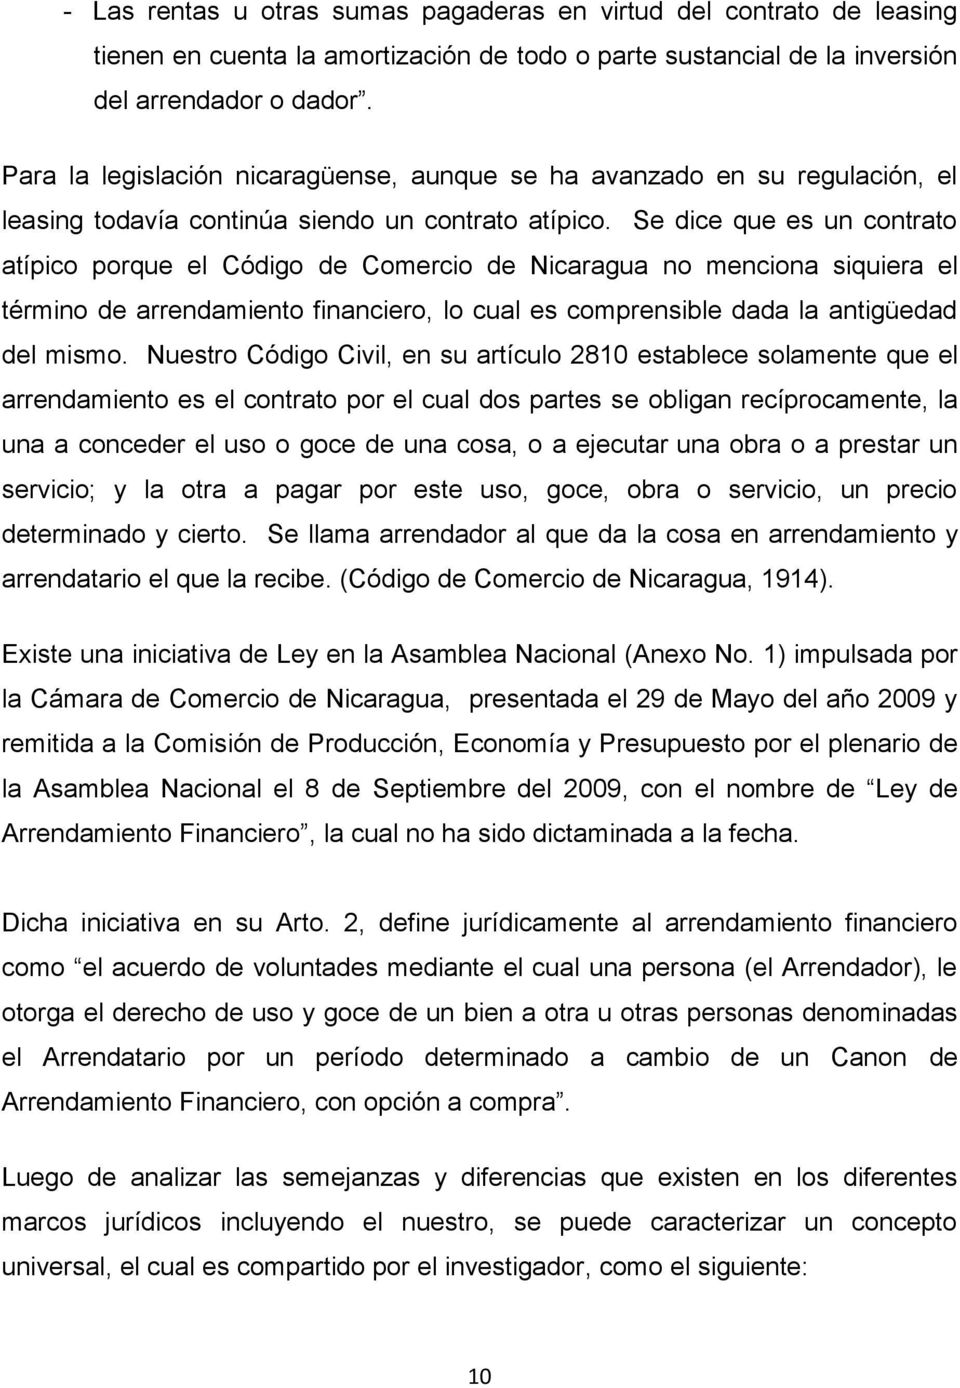 Se dice que es un contrato atípico porque el Código de Comercio de Nicaragua no menciona siquiera el término de arrendamiento financiero, lo cual es comprensible dada la antigüedad del mismo.